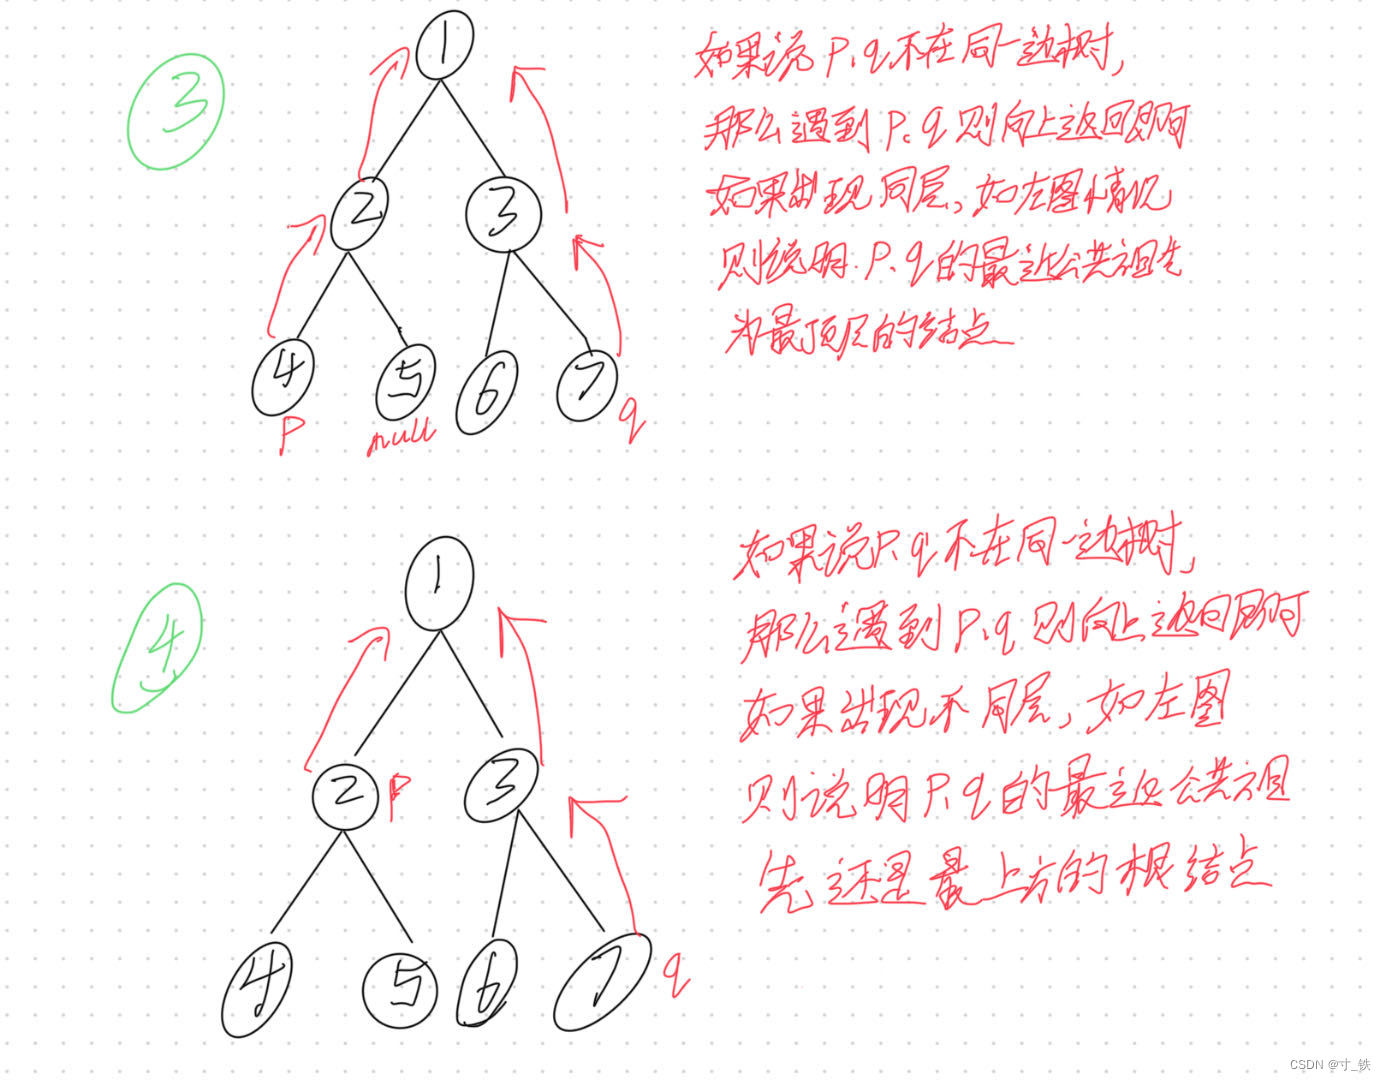 【寸铁的刷题笔记】树、dfs、bfs、回溯、递归(二)